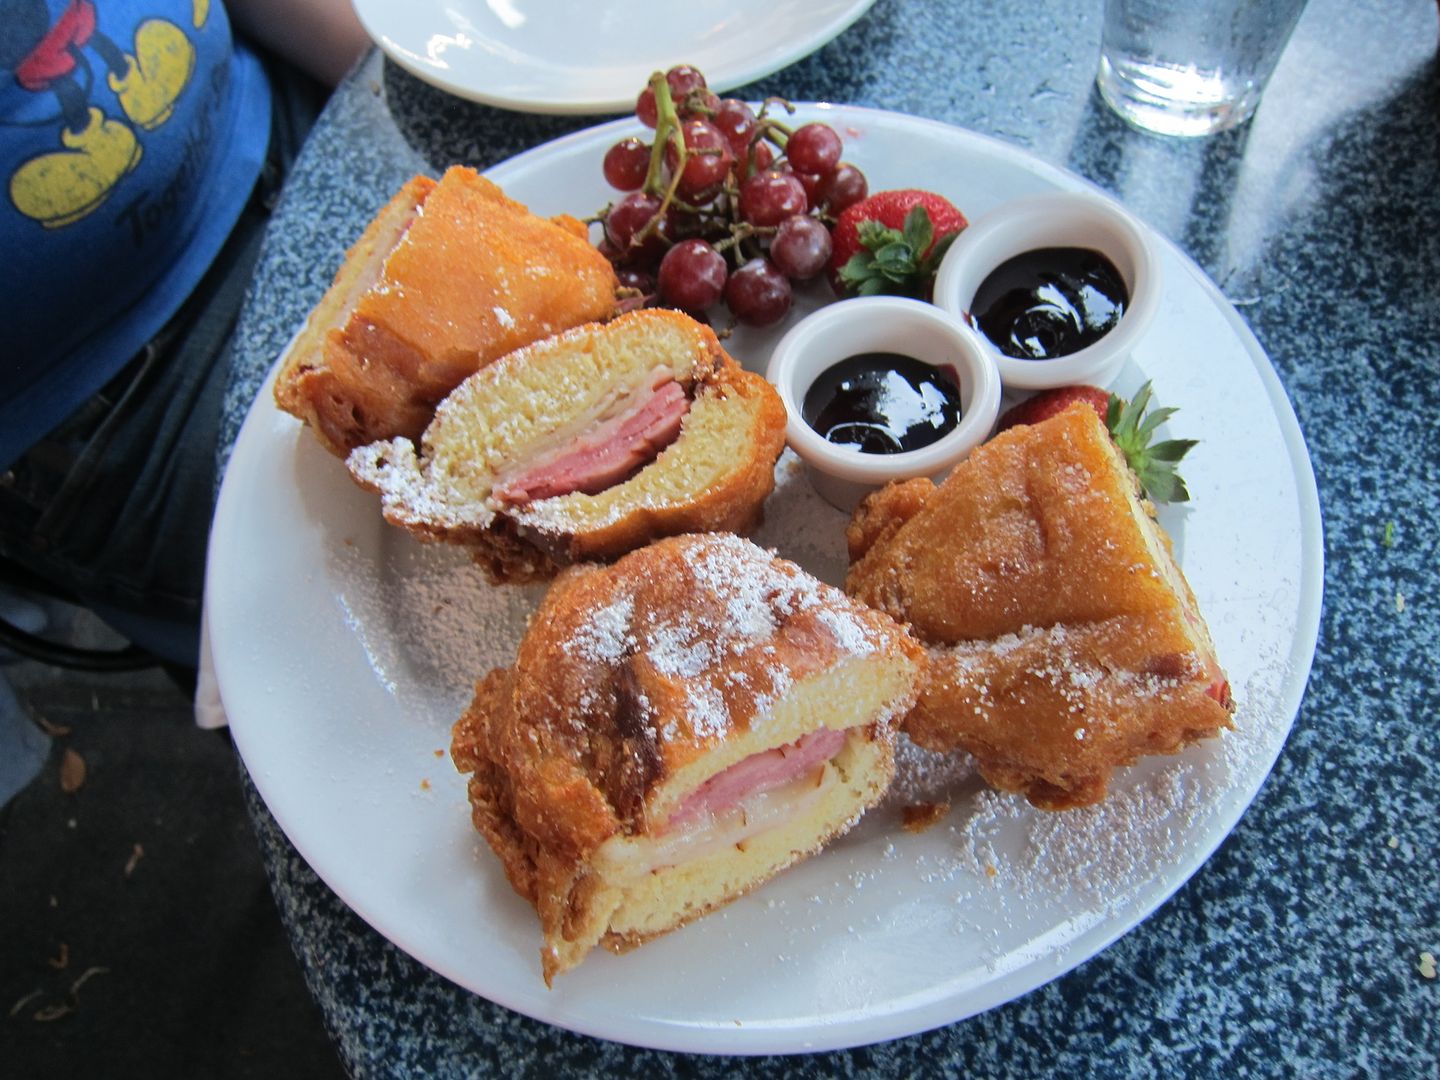 Monte Cristo | Cafe Orleans | Disneyland